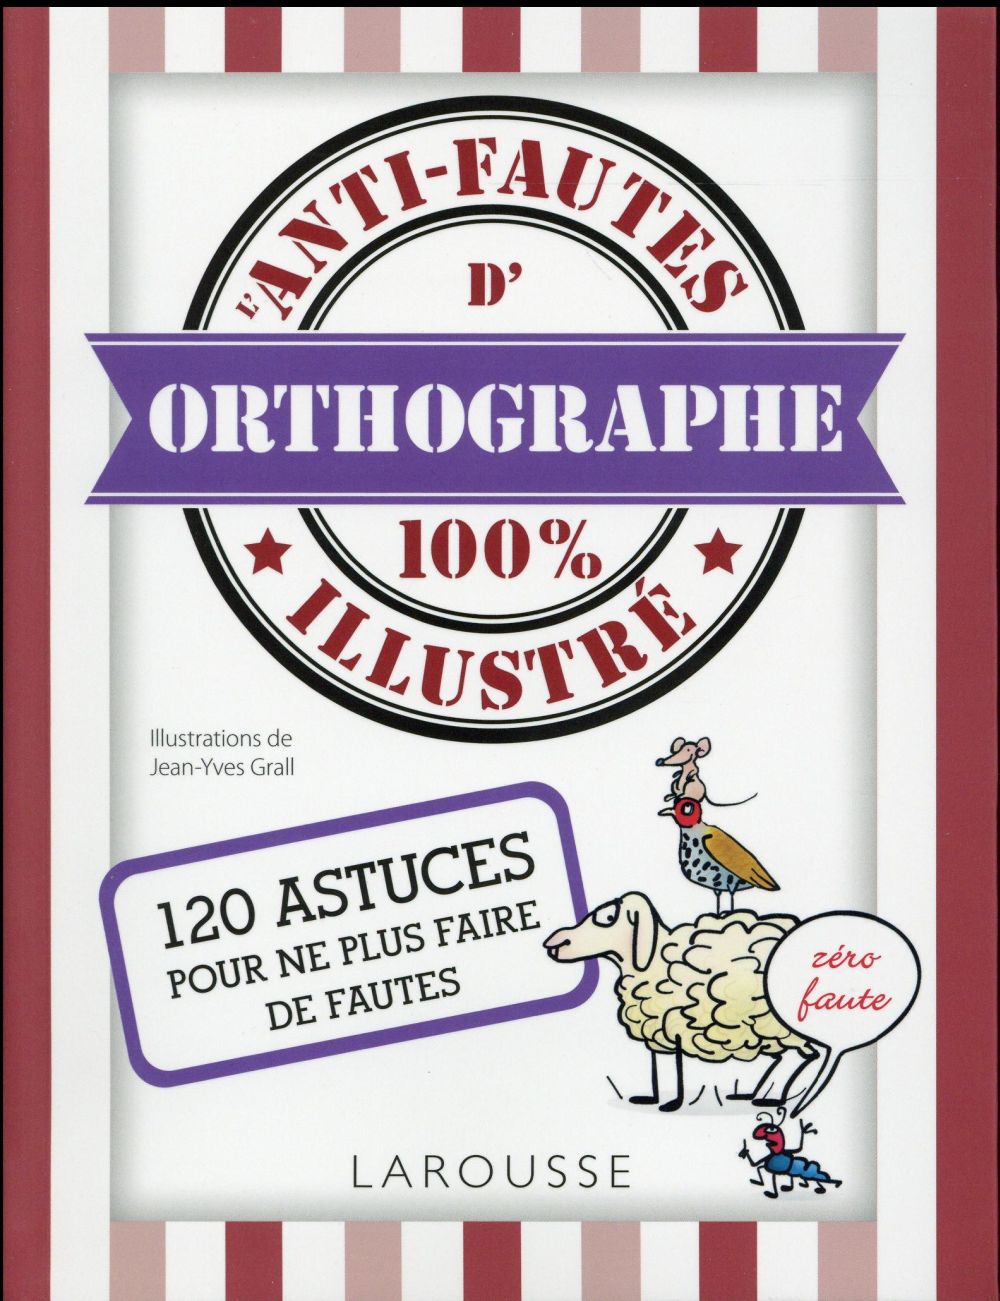 L'ANTI-FAUTES D'ORTHOGRAPHE 100% ILLUSTRE